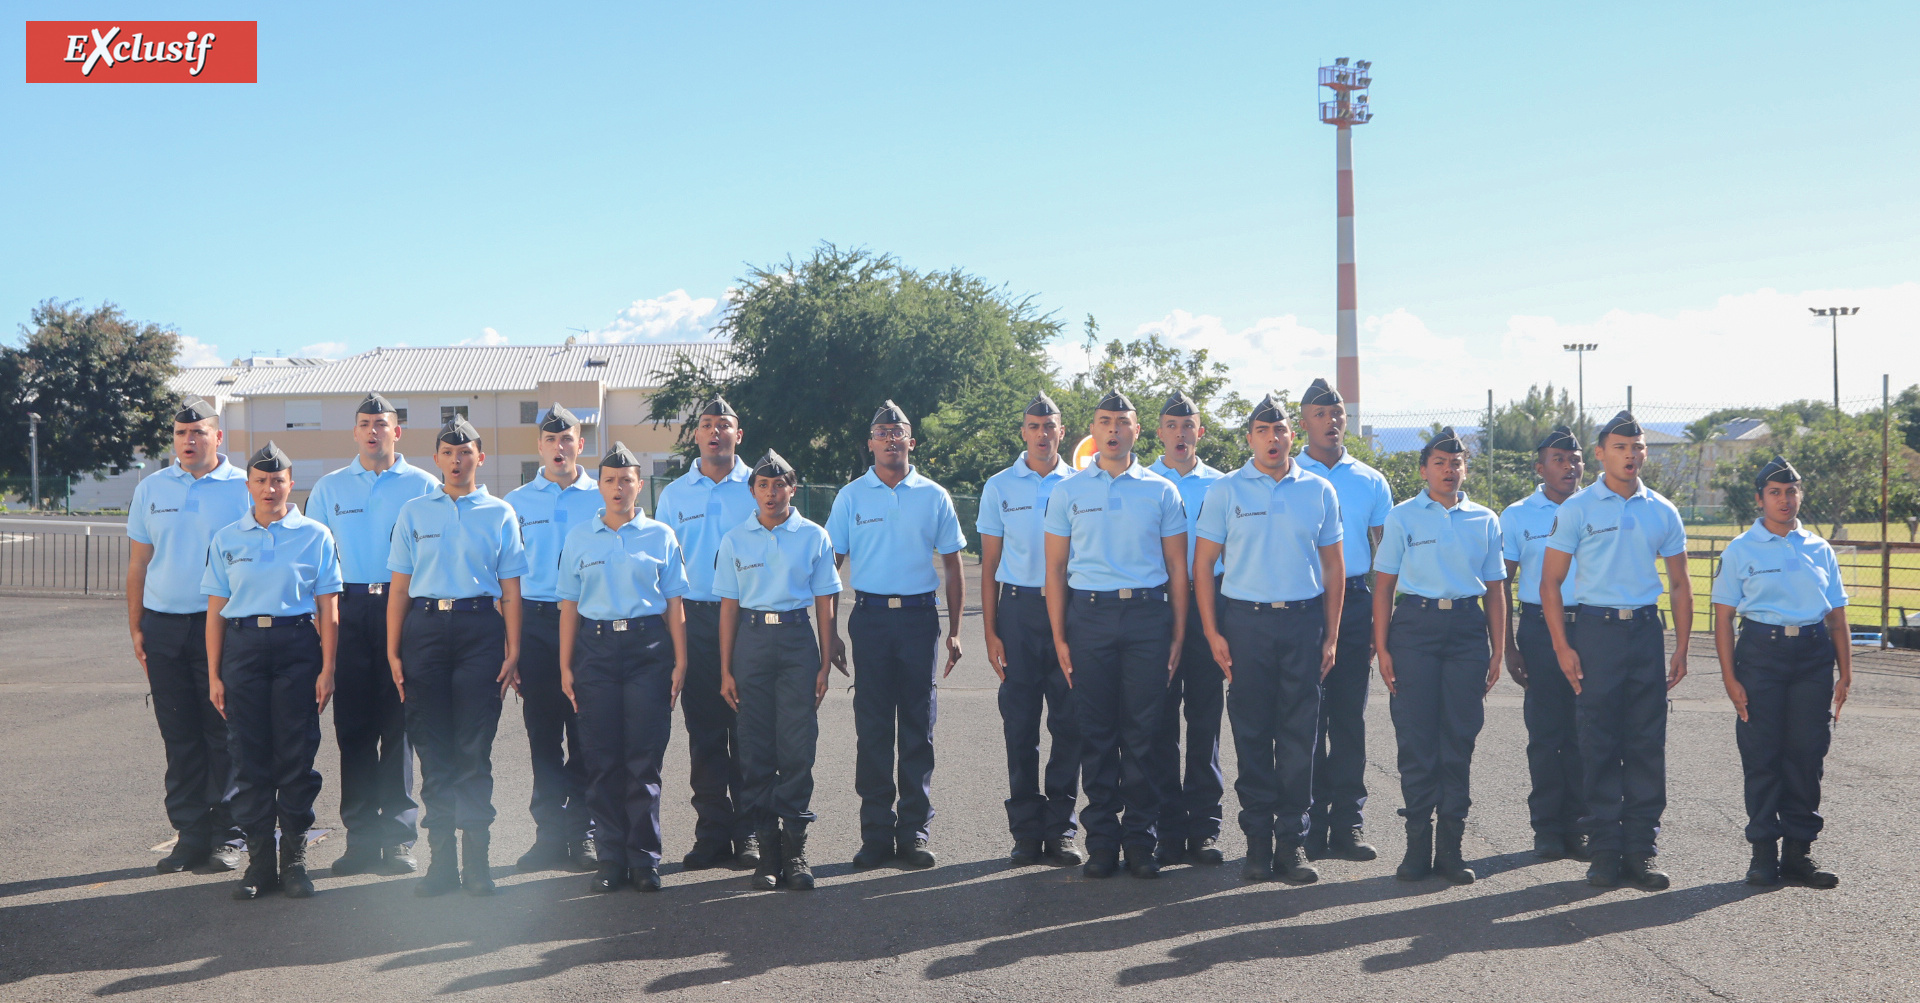 Les 18 gendarmes adjoints volontaires de la promotion